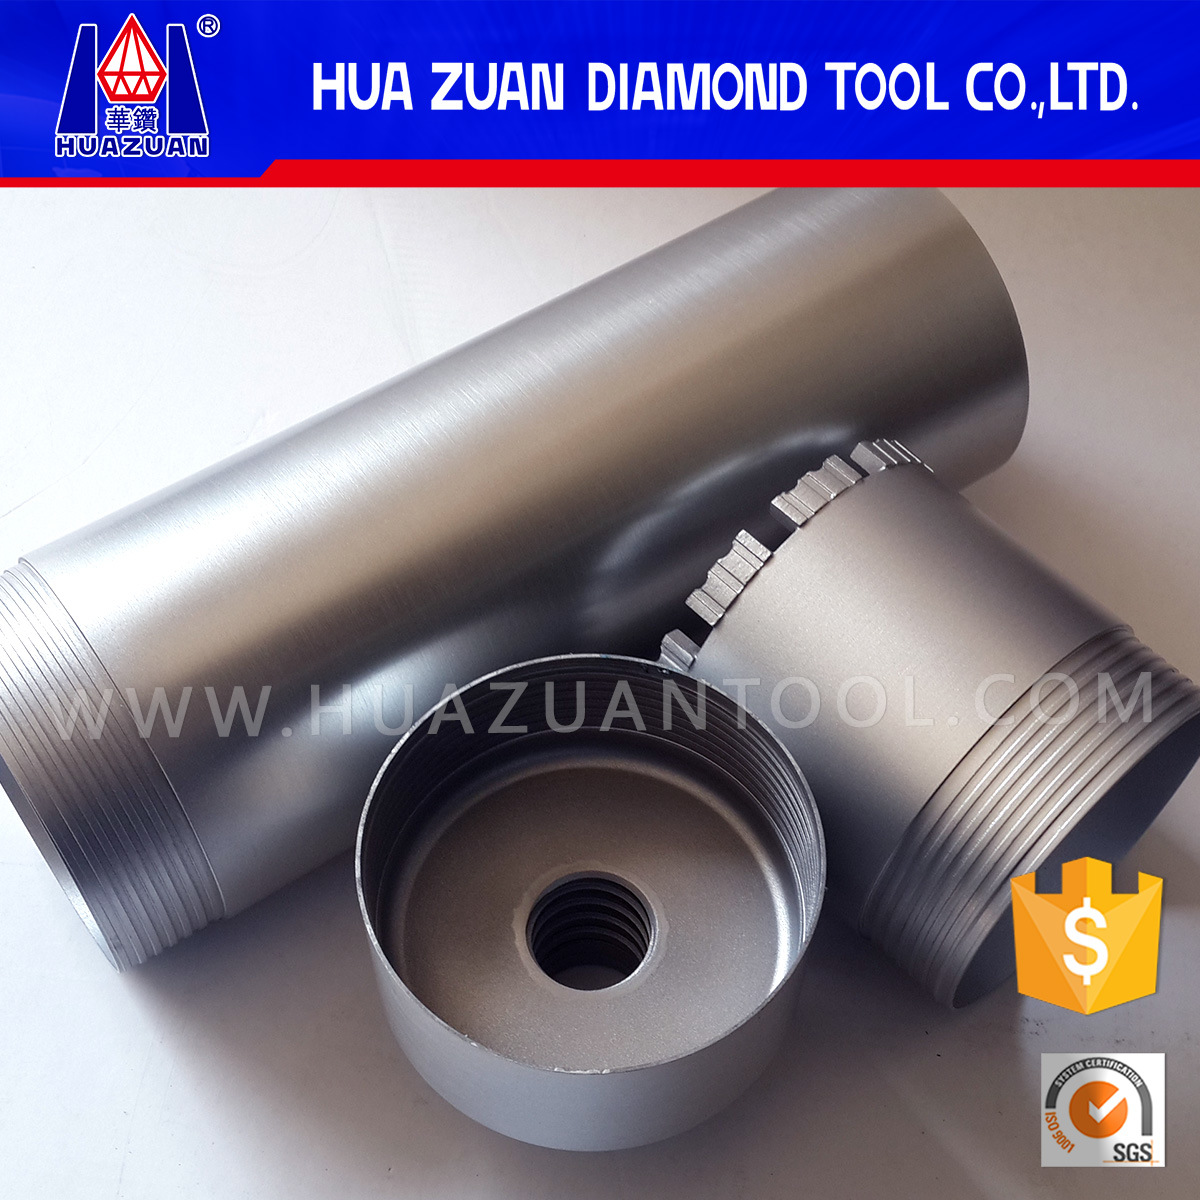 Huazuan 3 Parts Reinforced Concrete Diamond Core Drill Bit